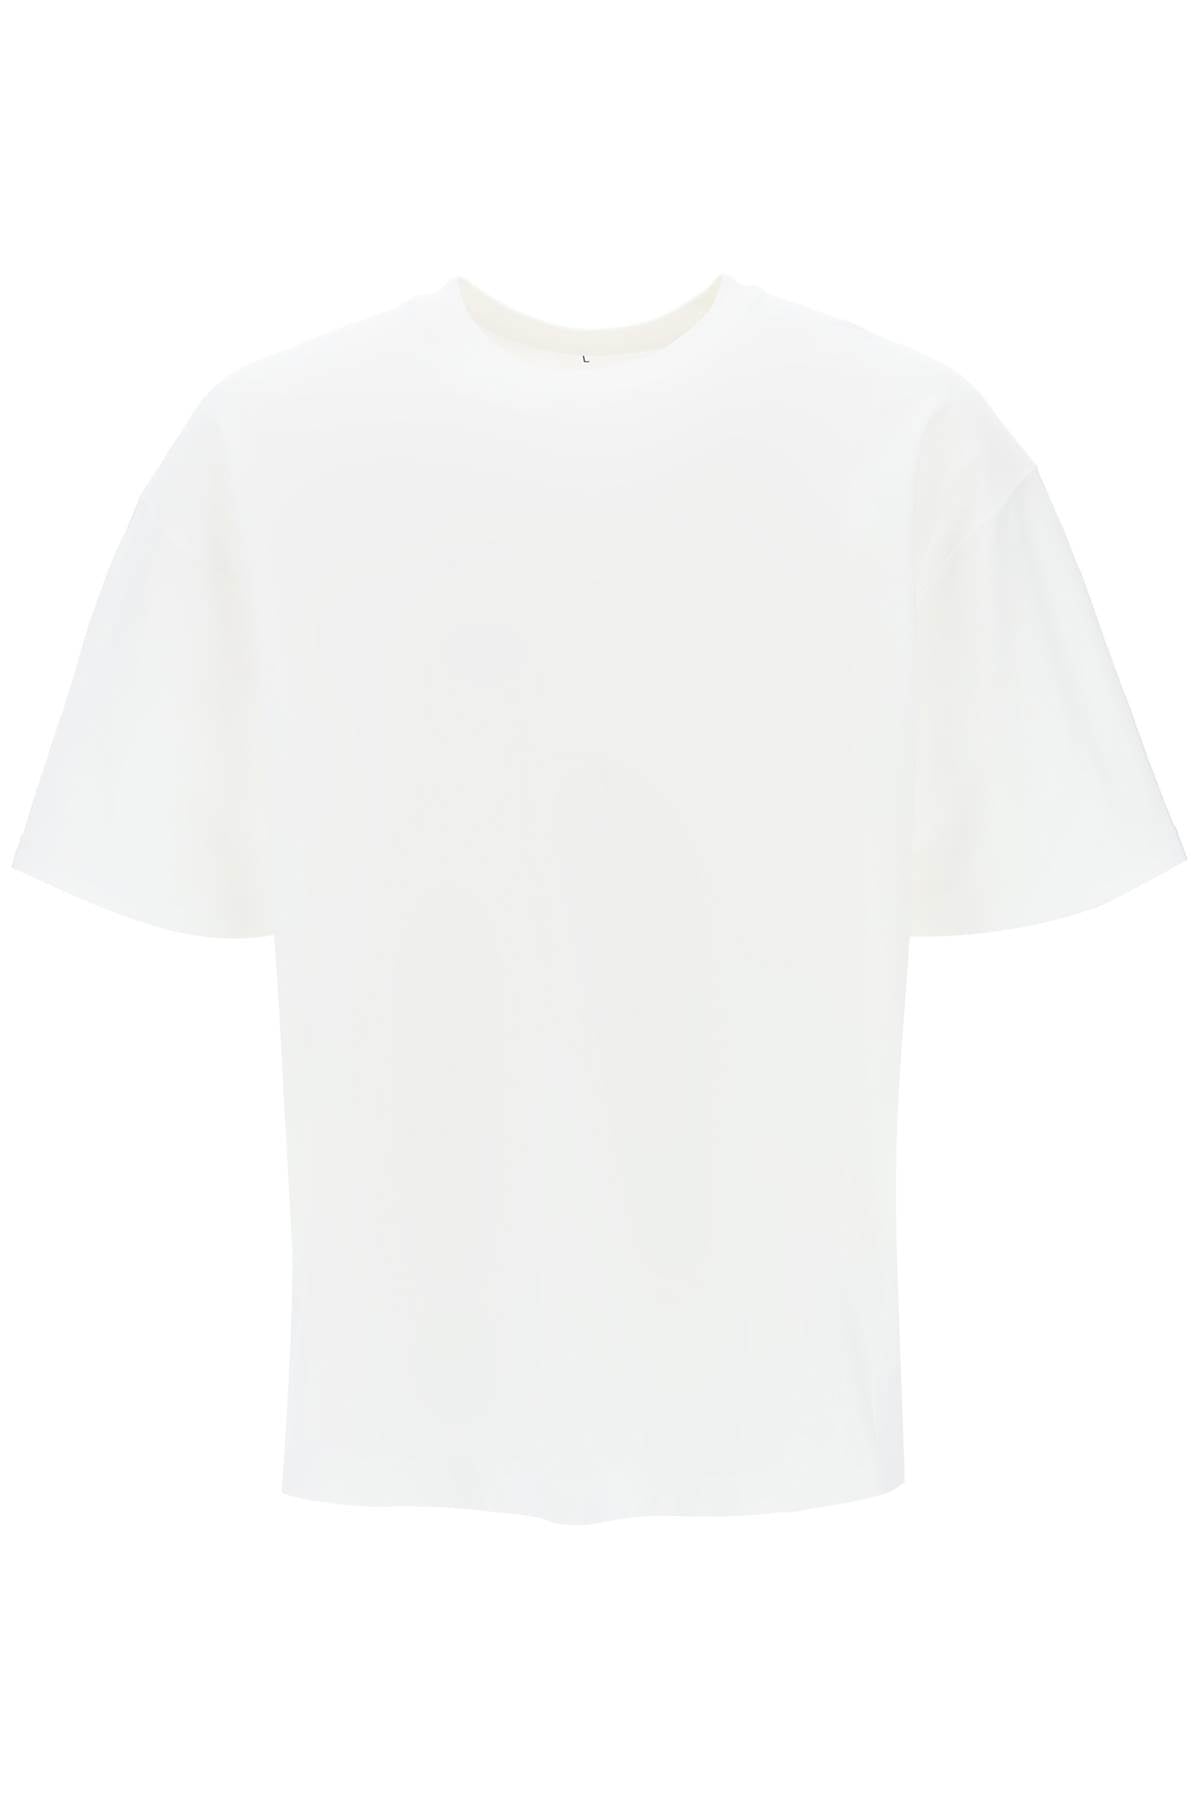 Carhartt wip organic cotton dawson t-shirt-T-Shirt-CARHARTT WIP-White-S-Urbanheer